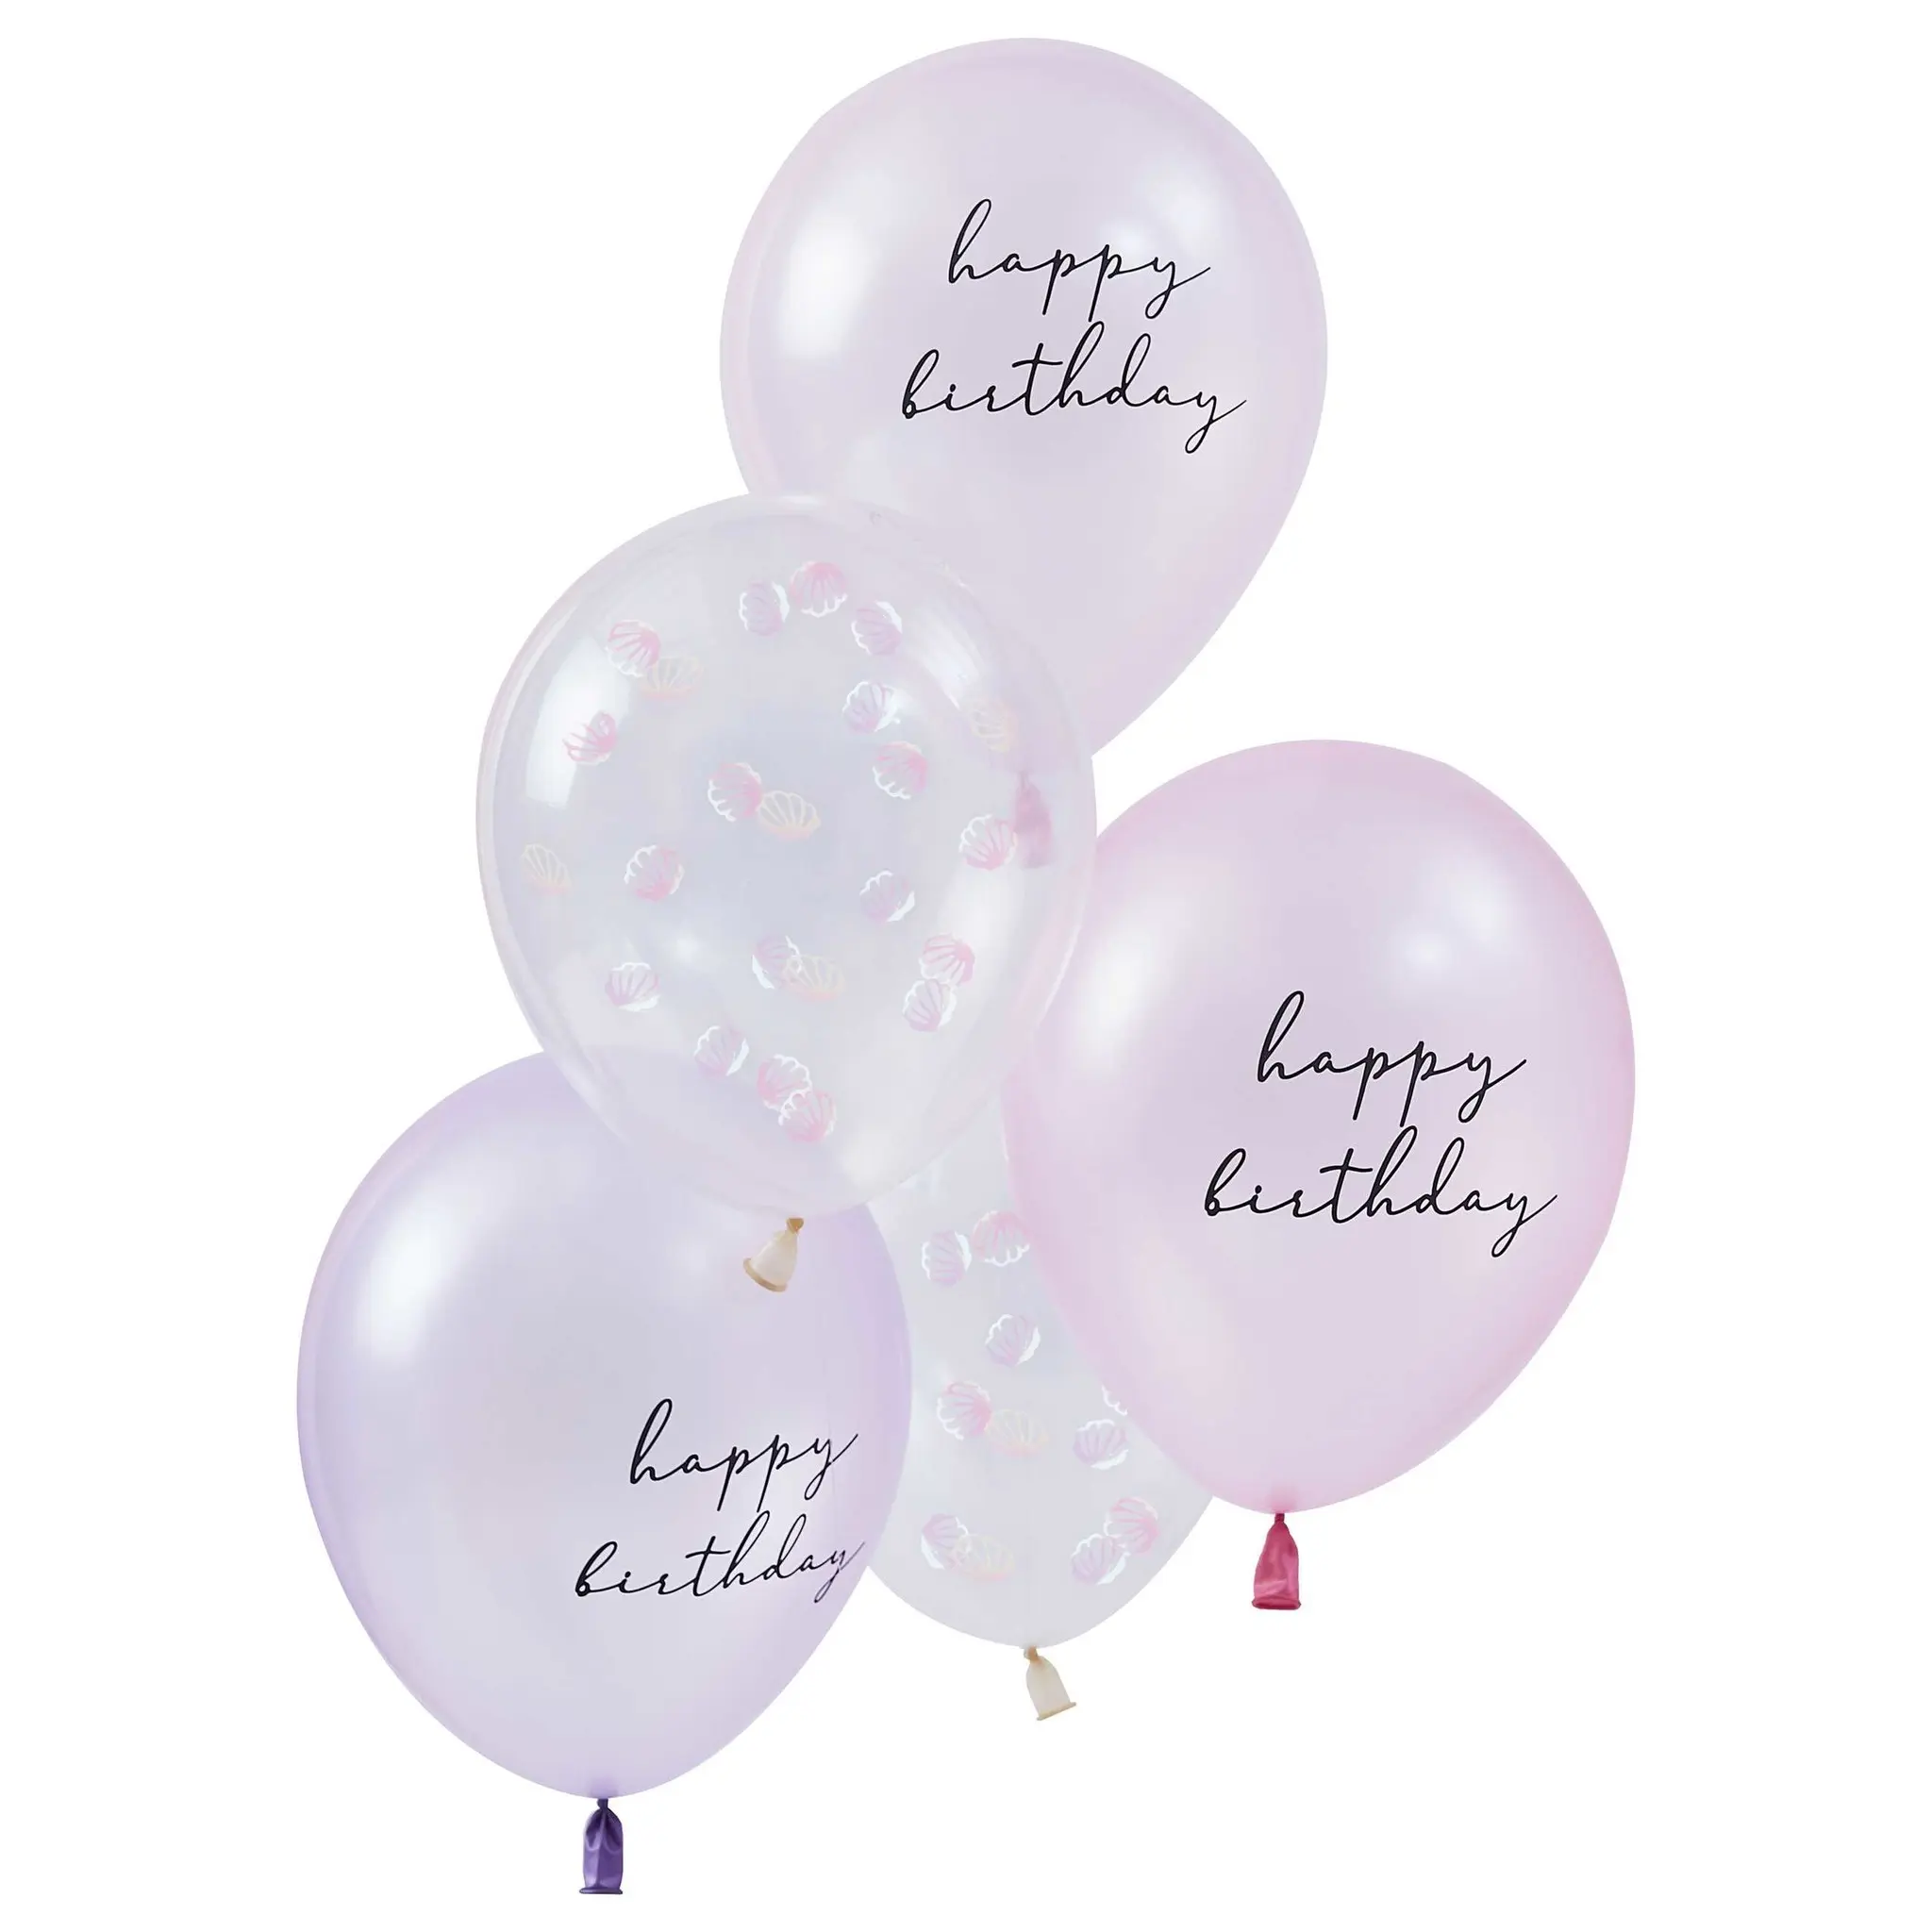 (confetti)ballonnen roze - Mermaid Magic - kinderfeestje versiering - 5stuks-1